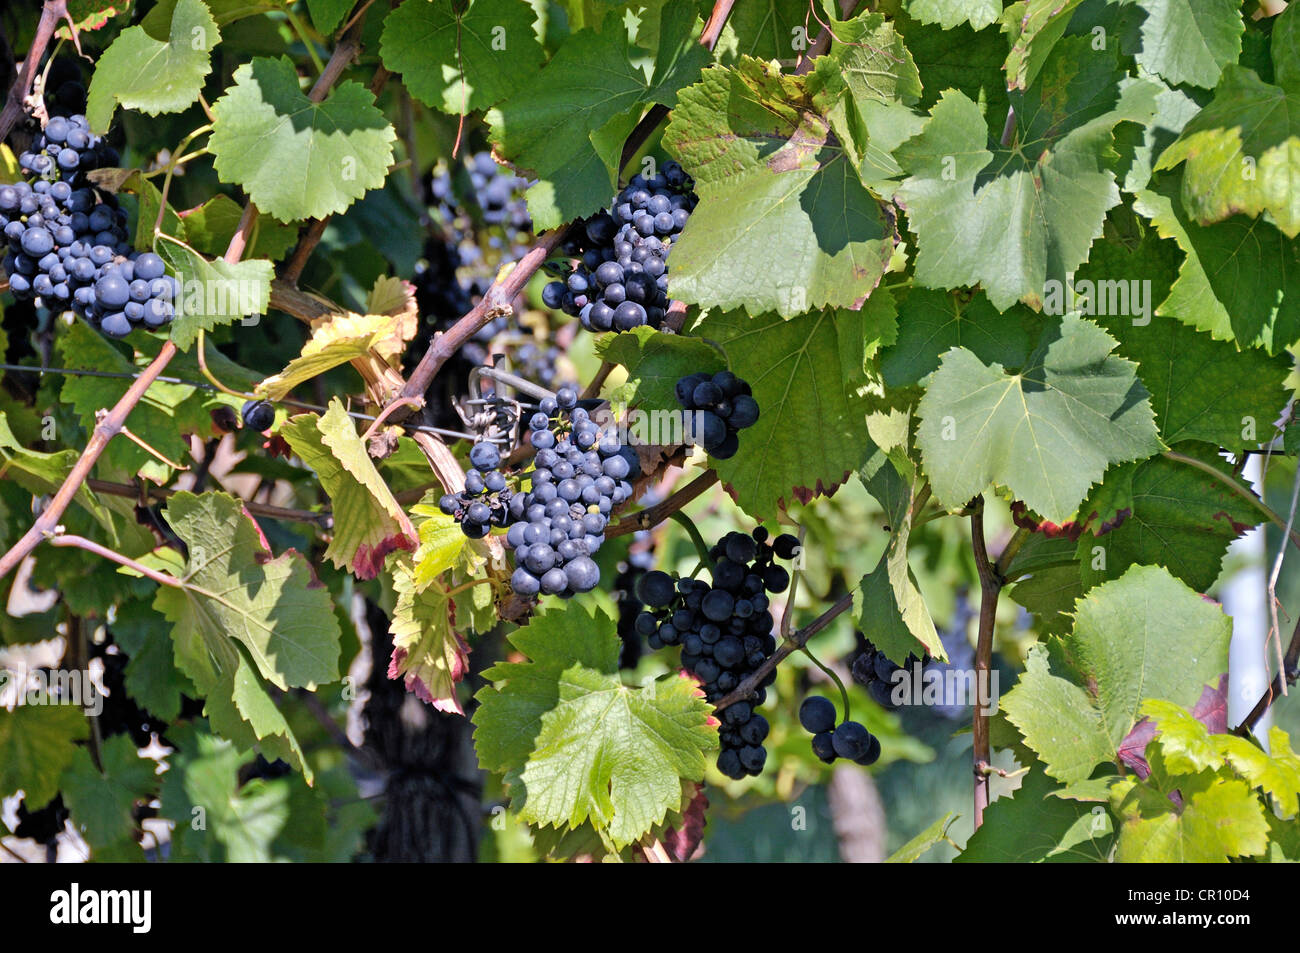 Grapes (Vitis vinifera), blue grapes on the vine, vineyard in Esslingen am Neckar, Baden-Wuerttemberg, Germany, Europe Stock Photo